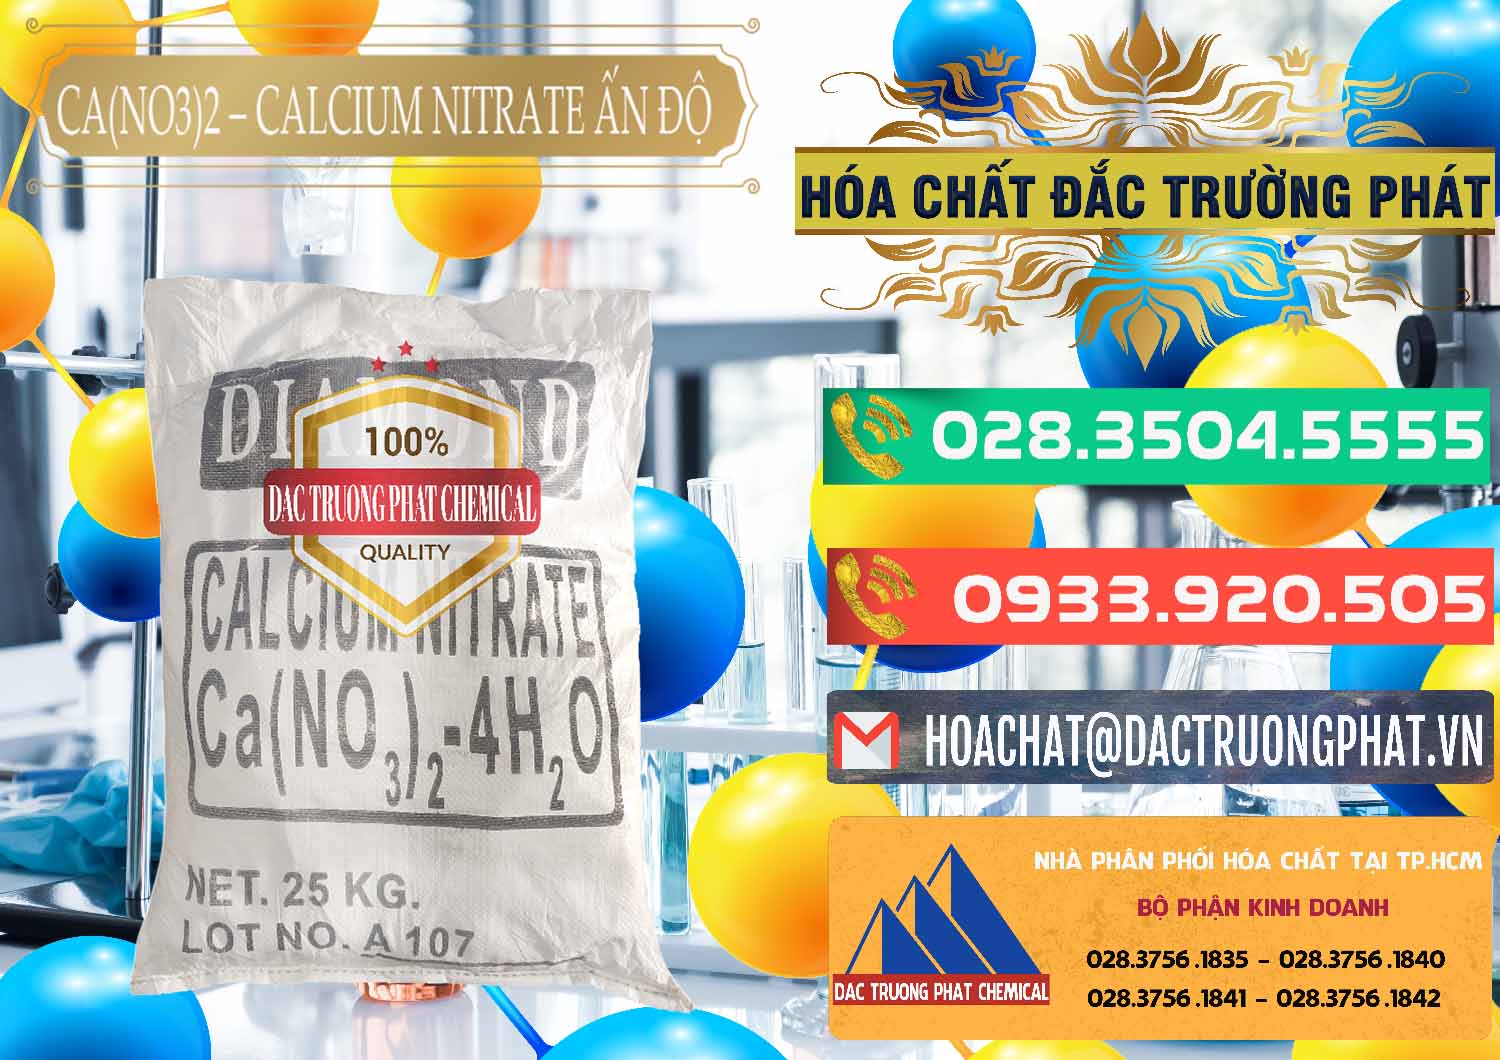 Nơi chuyên kinh doanh và bán CA(NO3)2 – Calcium Nitrate Ấn Độ India - 0038 - Cty kinh doanh _ phân phối hóa chất tại TP.HCM - congtyhoachat.com.vn